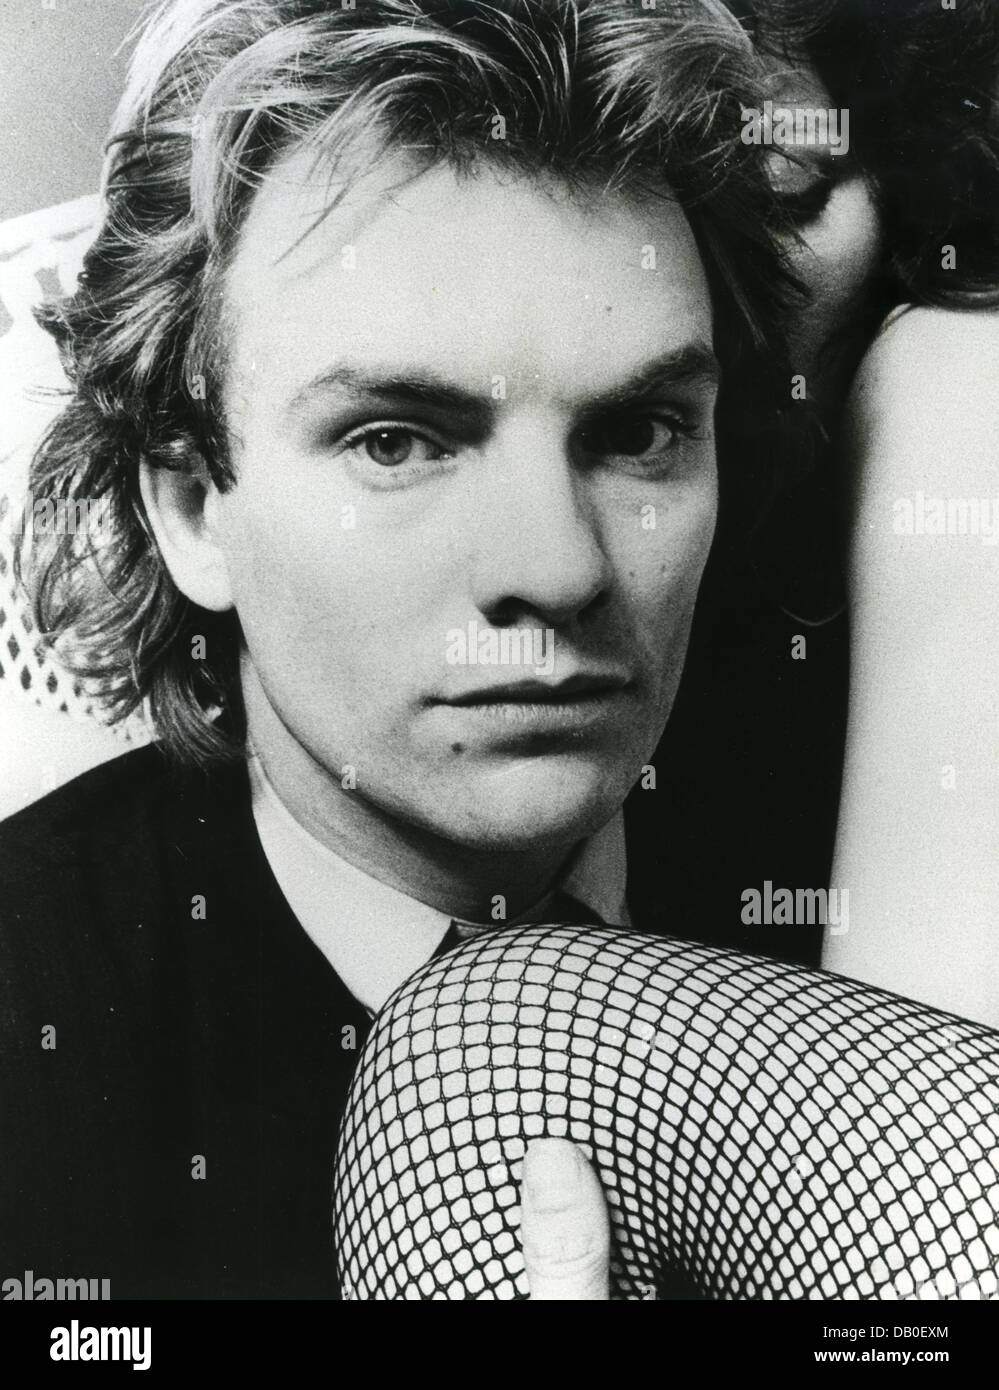 STING Promotional photo de musicien à propos de 1983 au Royaume-Uni Banque D'Images